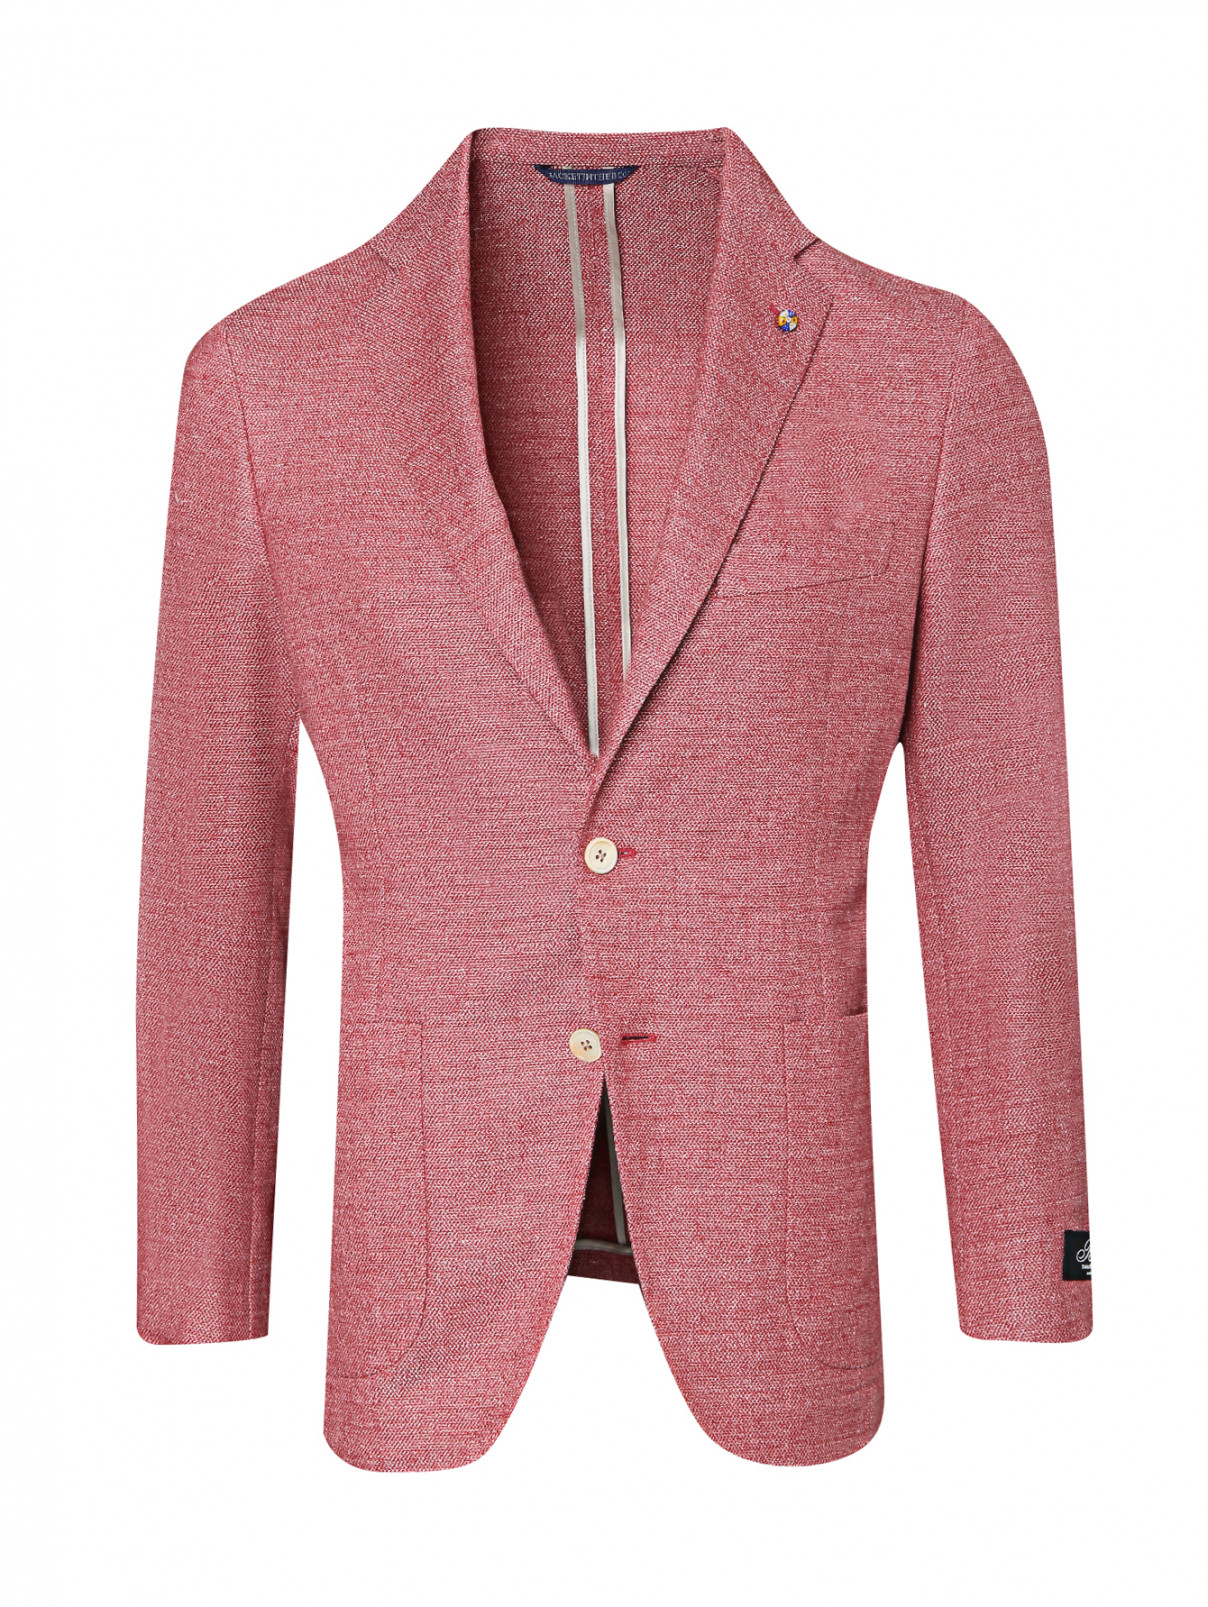 Пиджак с накладными карманами Belvest  –  Общий вид  – Цвет:  Красный